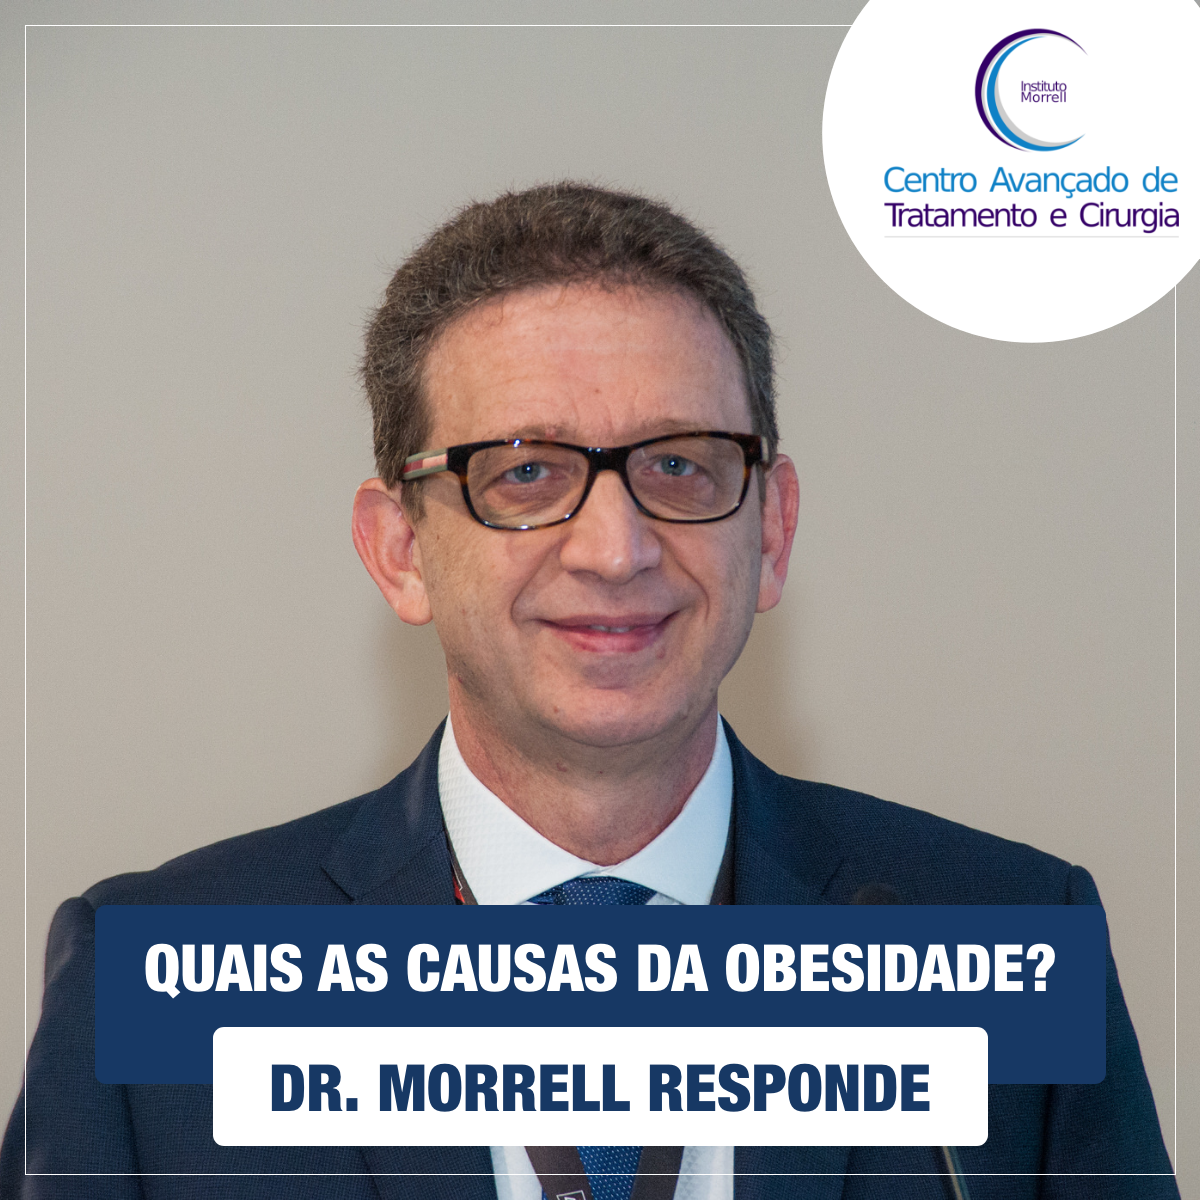 DR._MORRELL_RESPONDE_-_QUAIS_AS_CAUSAS_DA_OBESIDADE-1200x1200.png